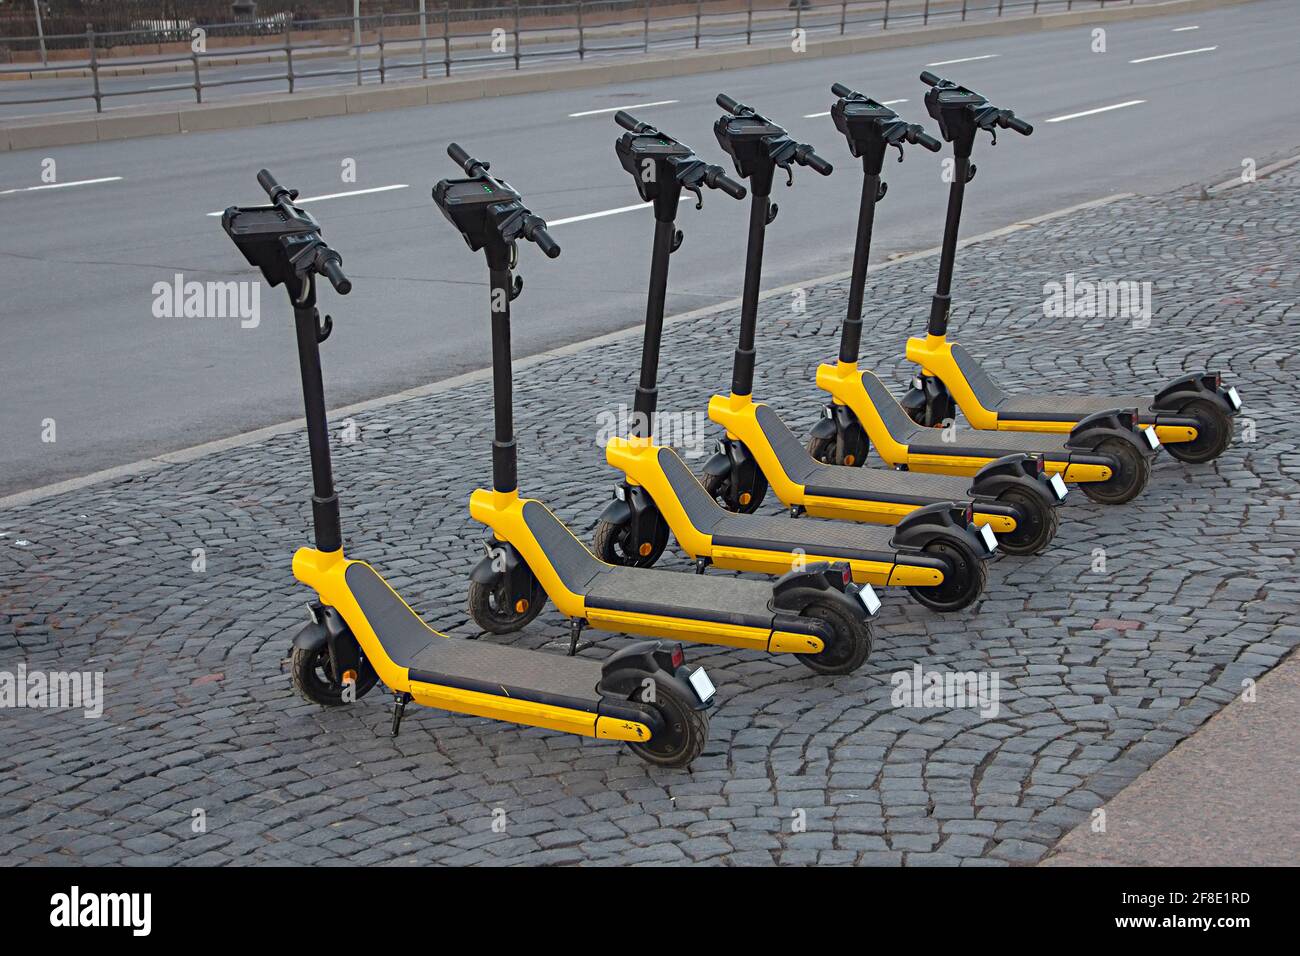 Location de scooters électriques garés dans les rues de la ville, transport écologique, véhicule économique, partage Banque D'Images